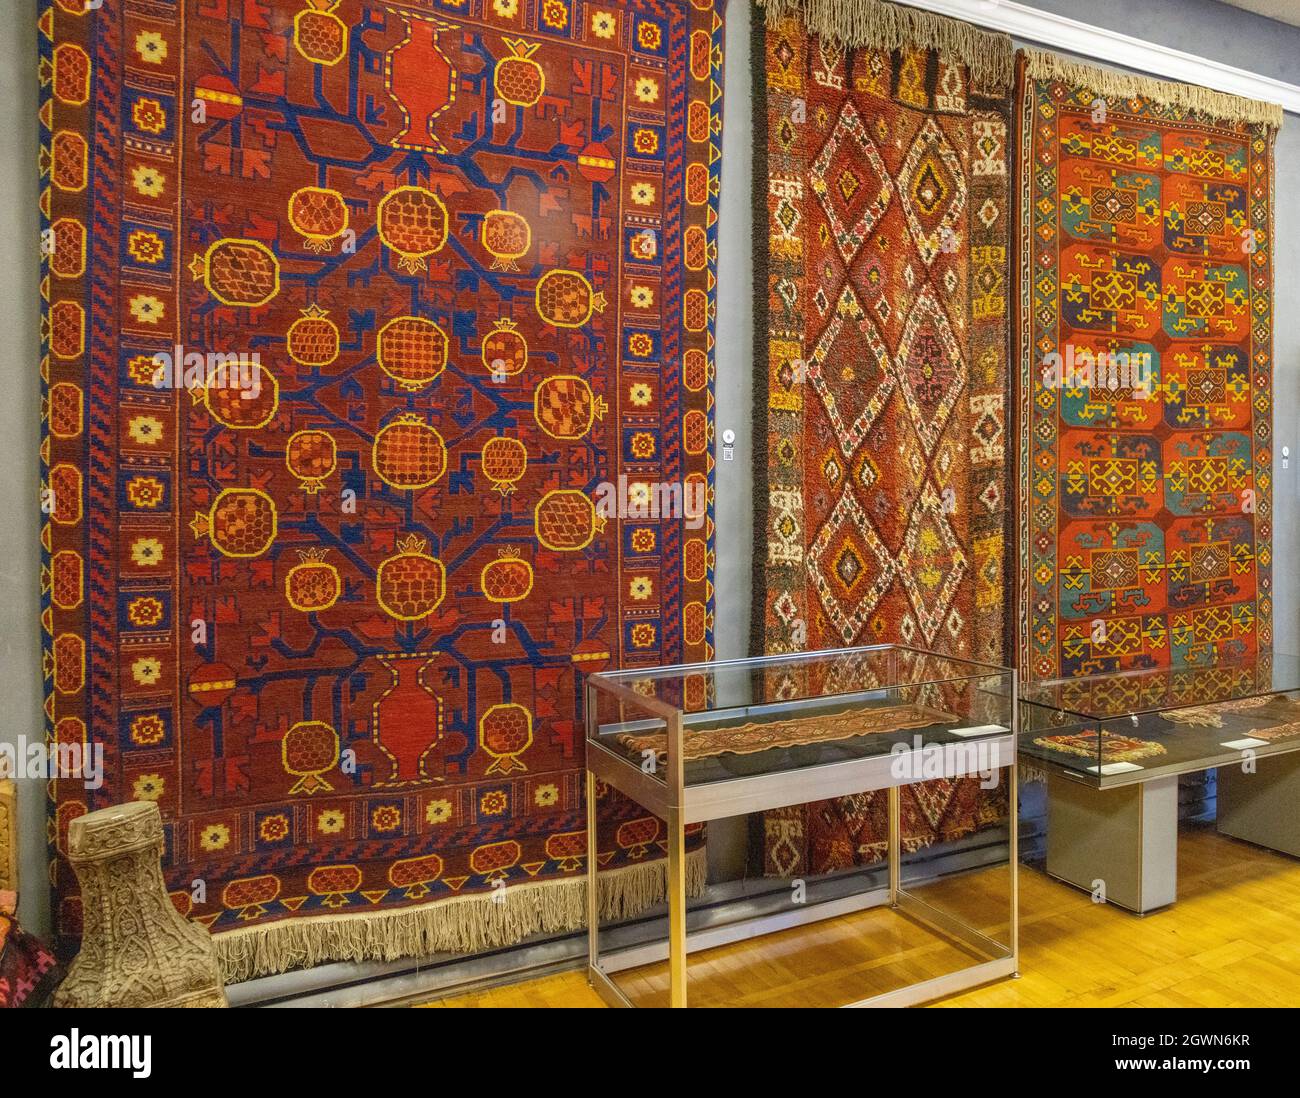 Exposition de tapis, Musée national des arts appliqués d'Ouzbékistan Tachkent, Ouzbékistan Banque D'Images